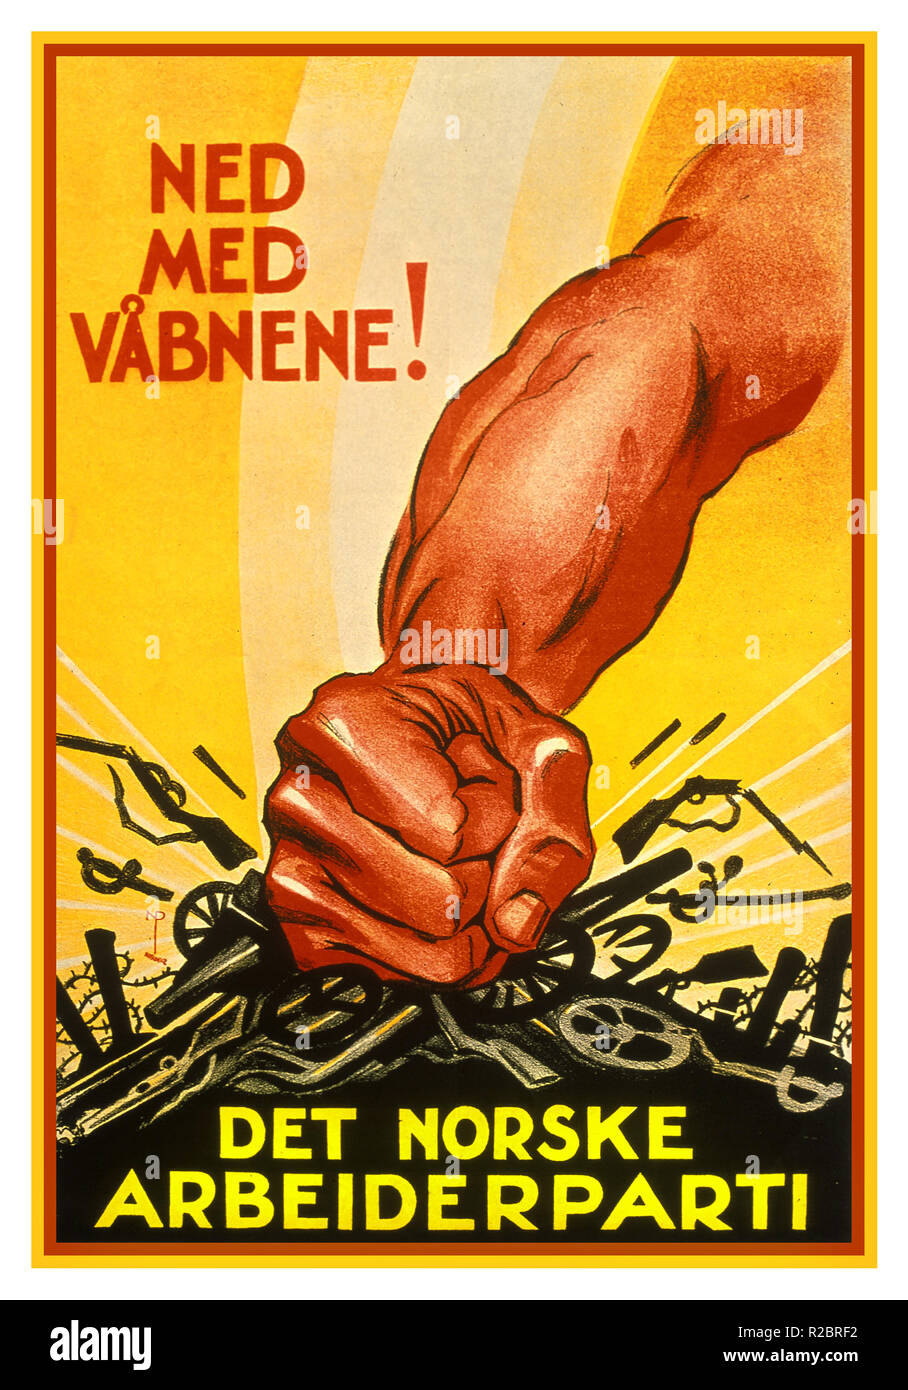 Vintage norvegese poster di propaganda degli anni trenta 'Dproprio con bracci' (NED MED VABNENE!) Det Norske Arbeiderparti 'Il norvegese del partito laburista' Foto Stock